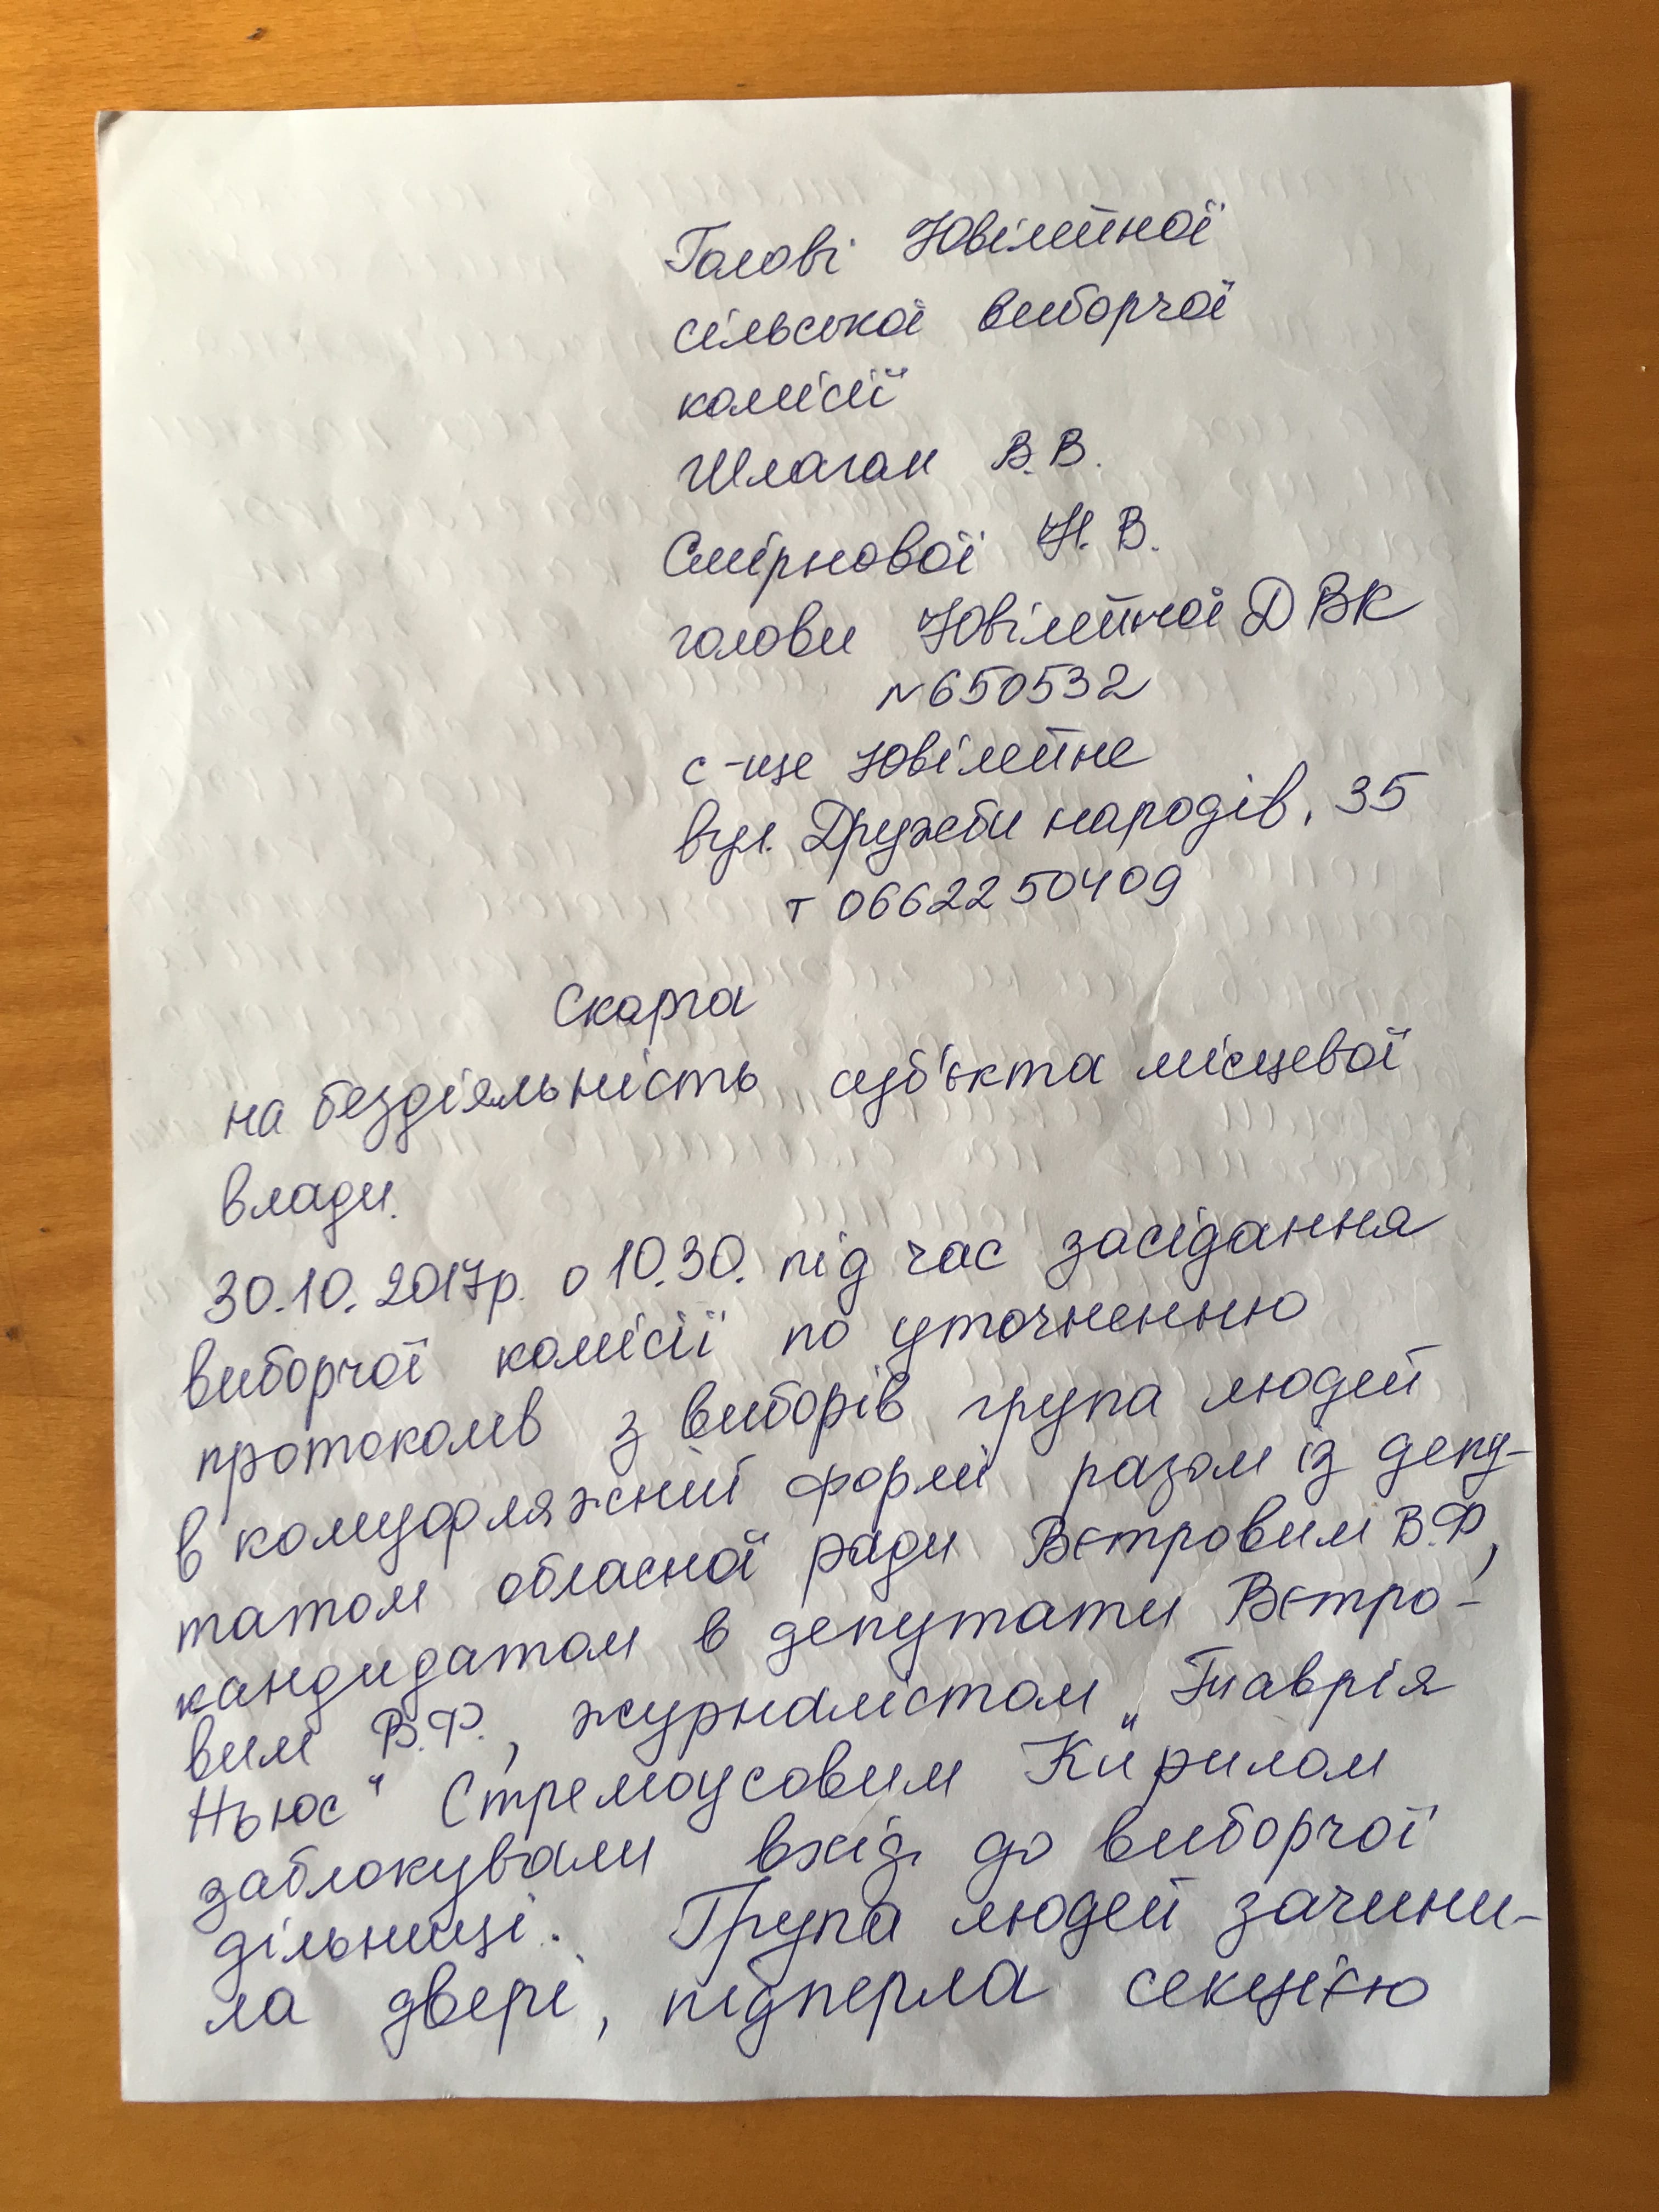 6 11 2017 Kherson skarga 1 min